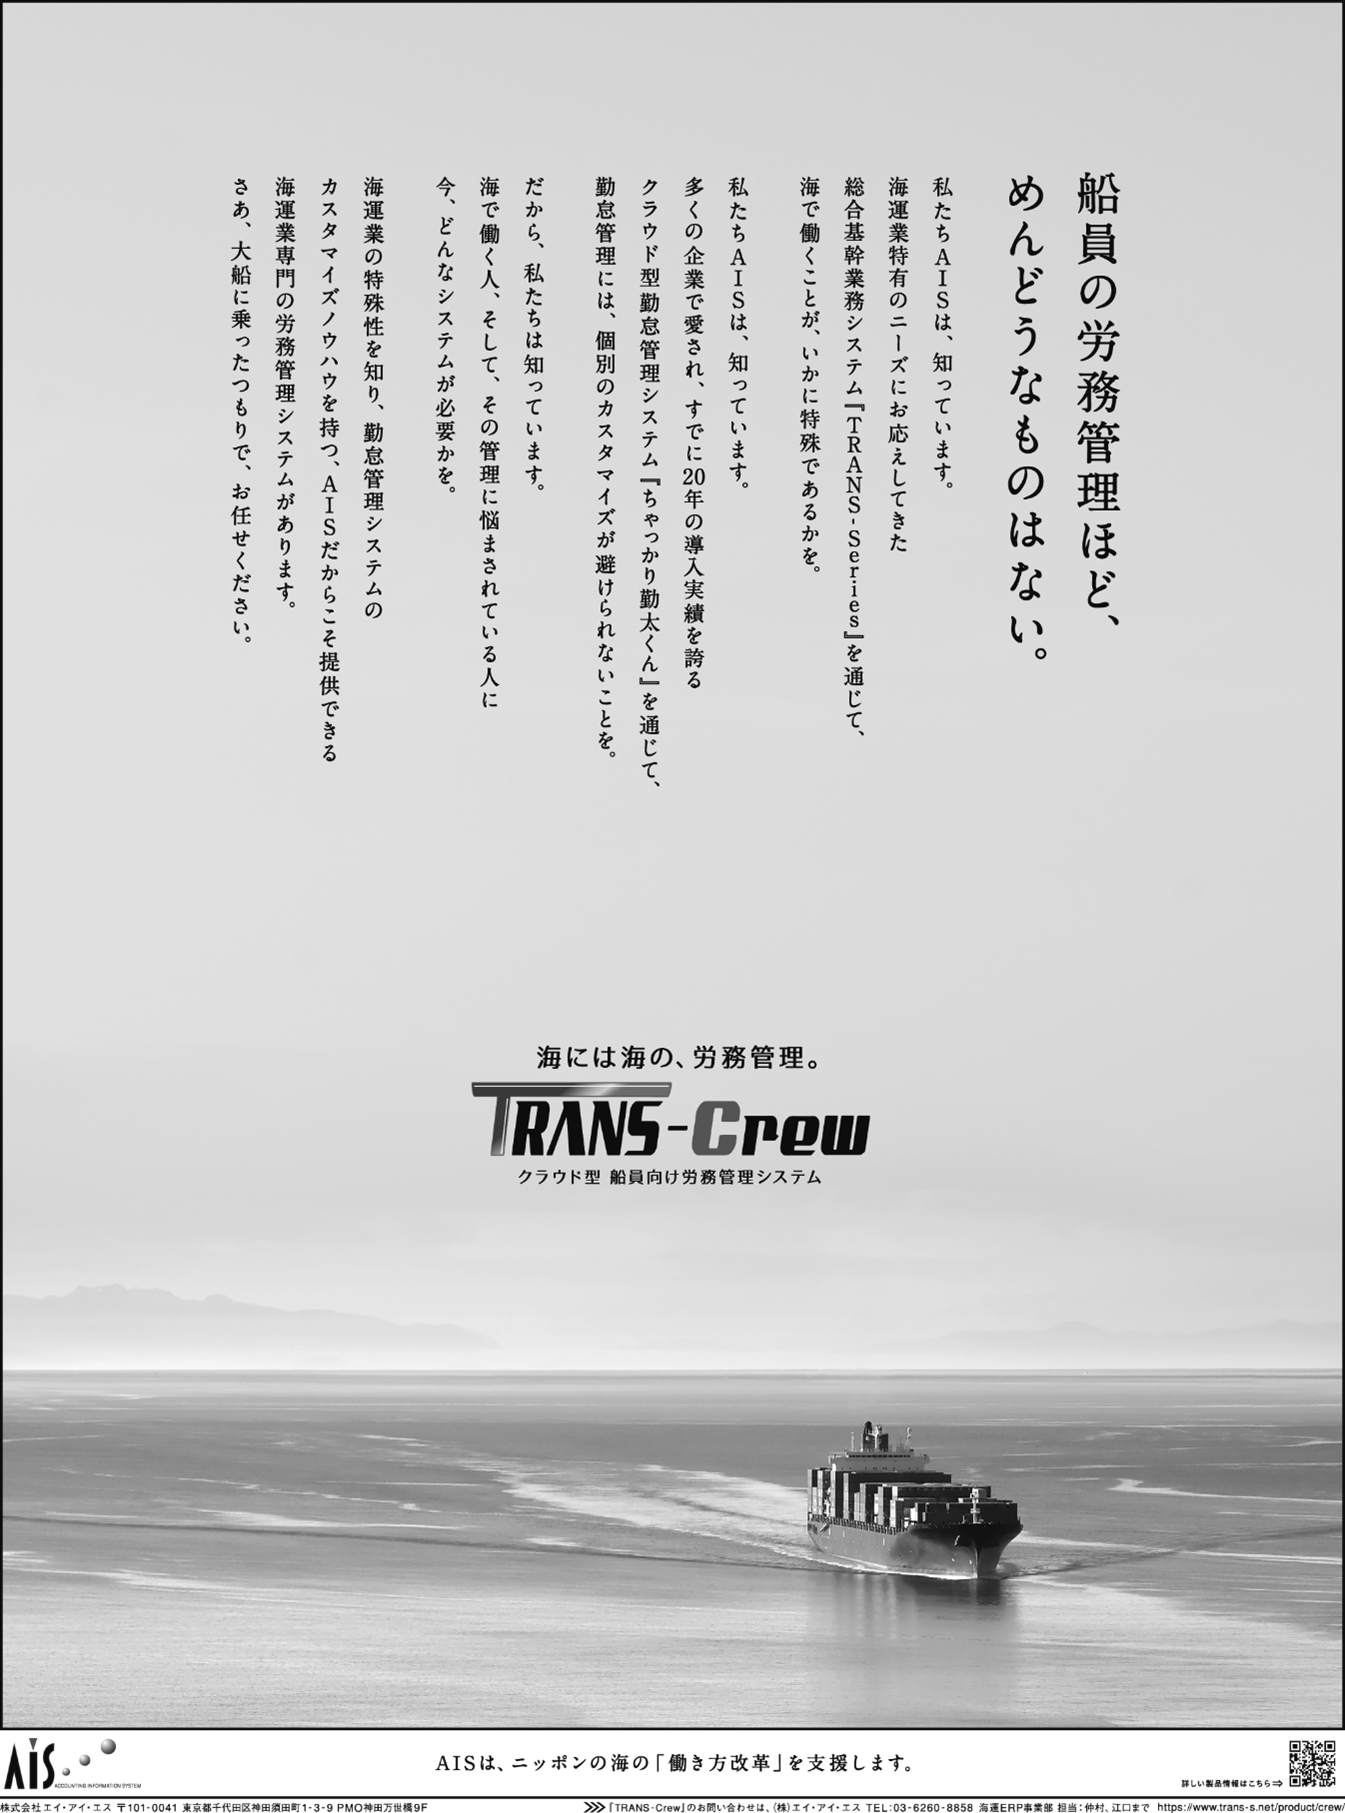 「TRANS-Crew」ブランドメッセージ